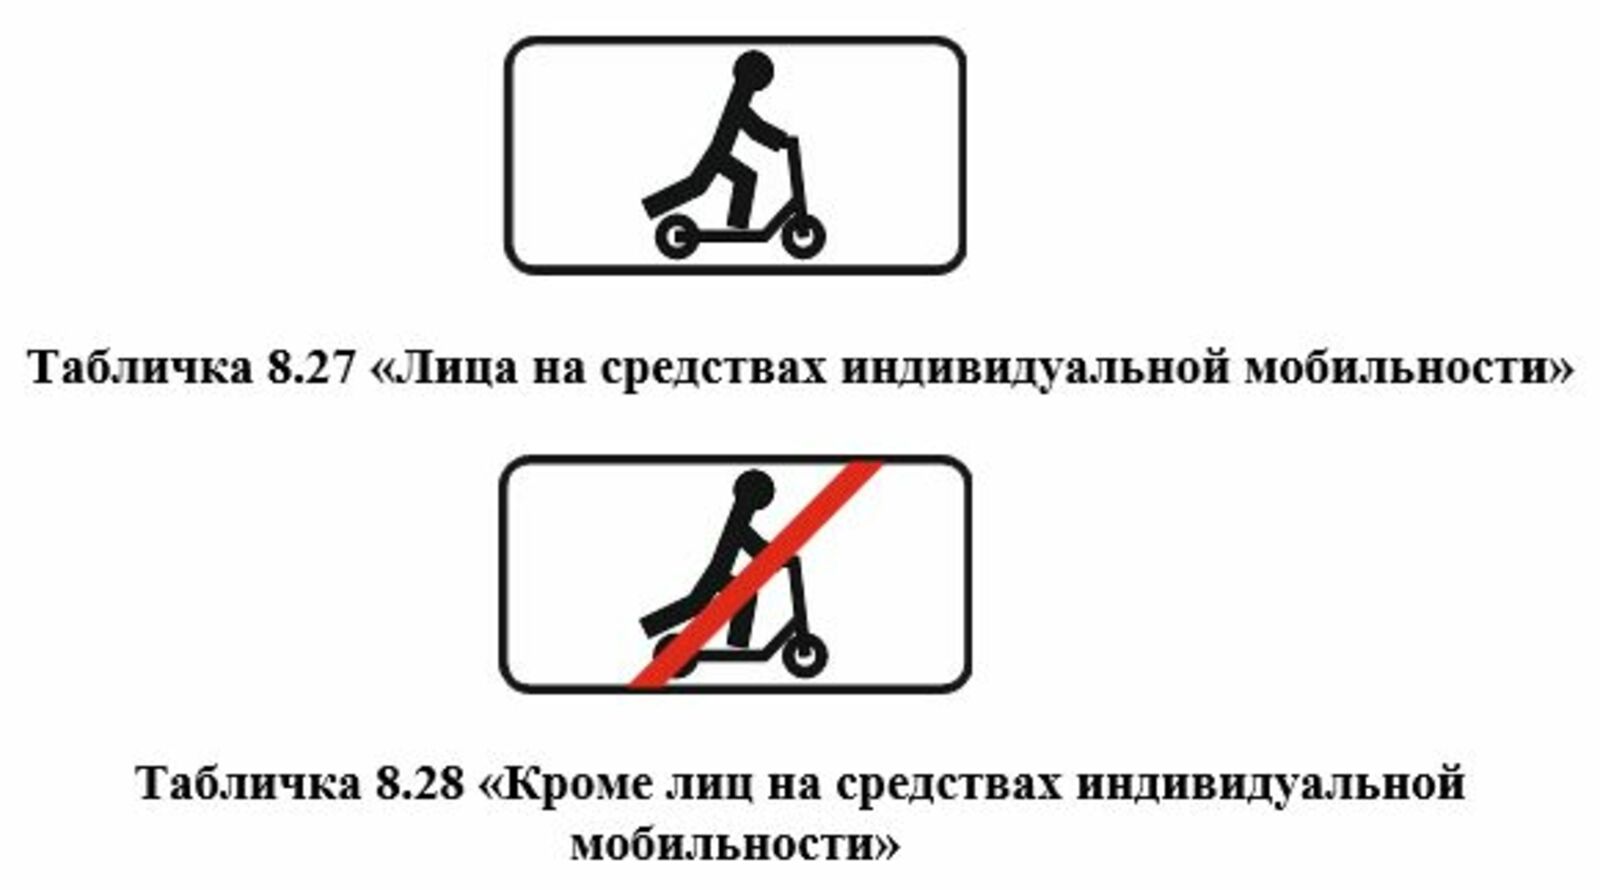 В России утверждены изменения в правила дорожного движения, касающиеся средств индивидуальной мобильности